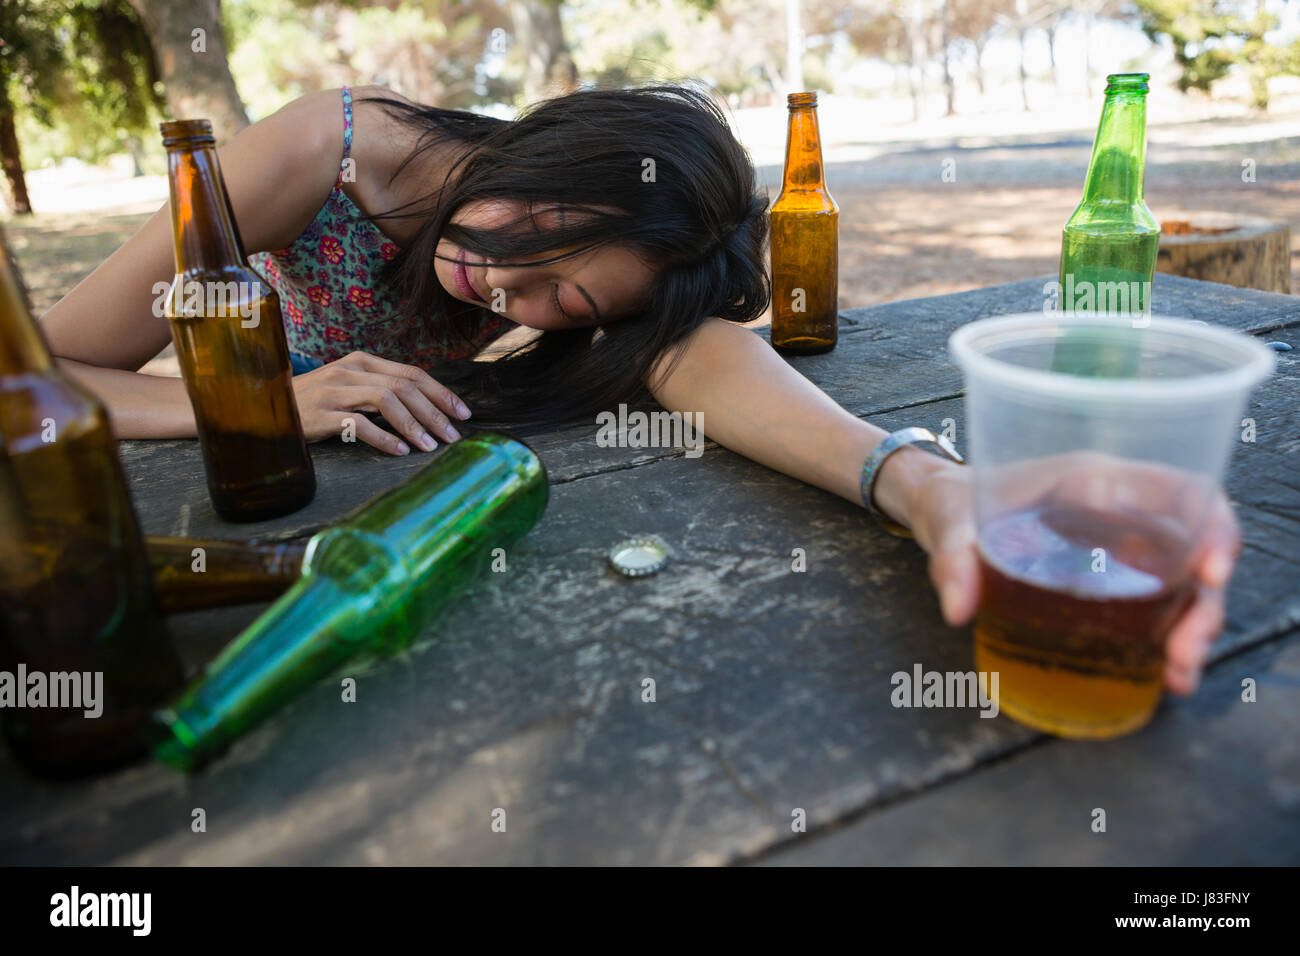 Betrunkene Frau Entspannend Auf Dem Tisch Mit Einem Glas Im Park Stockfotografie Alamy 